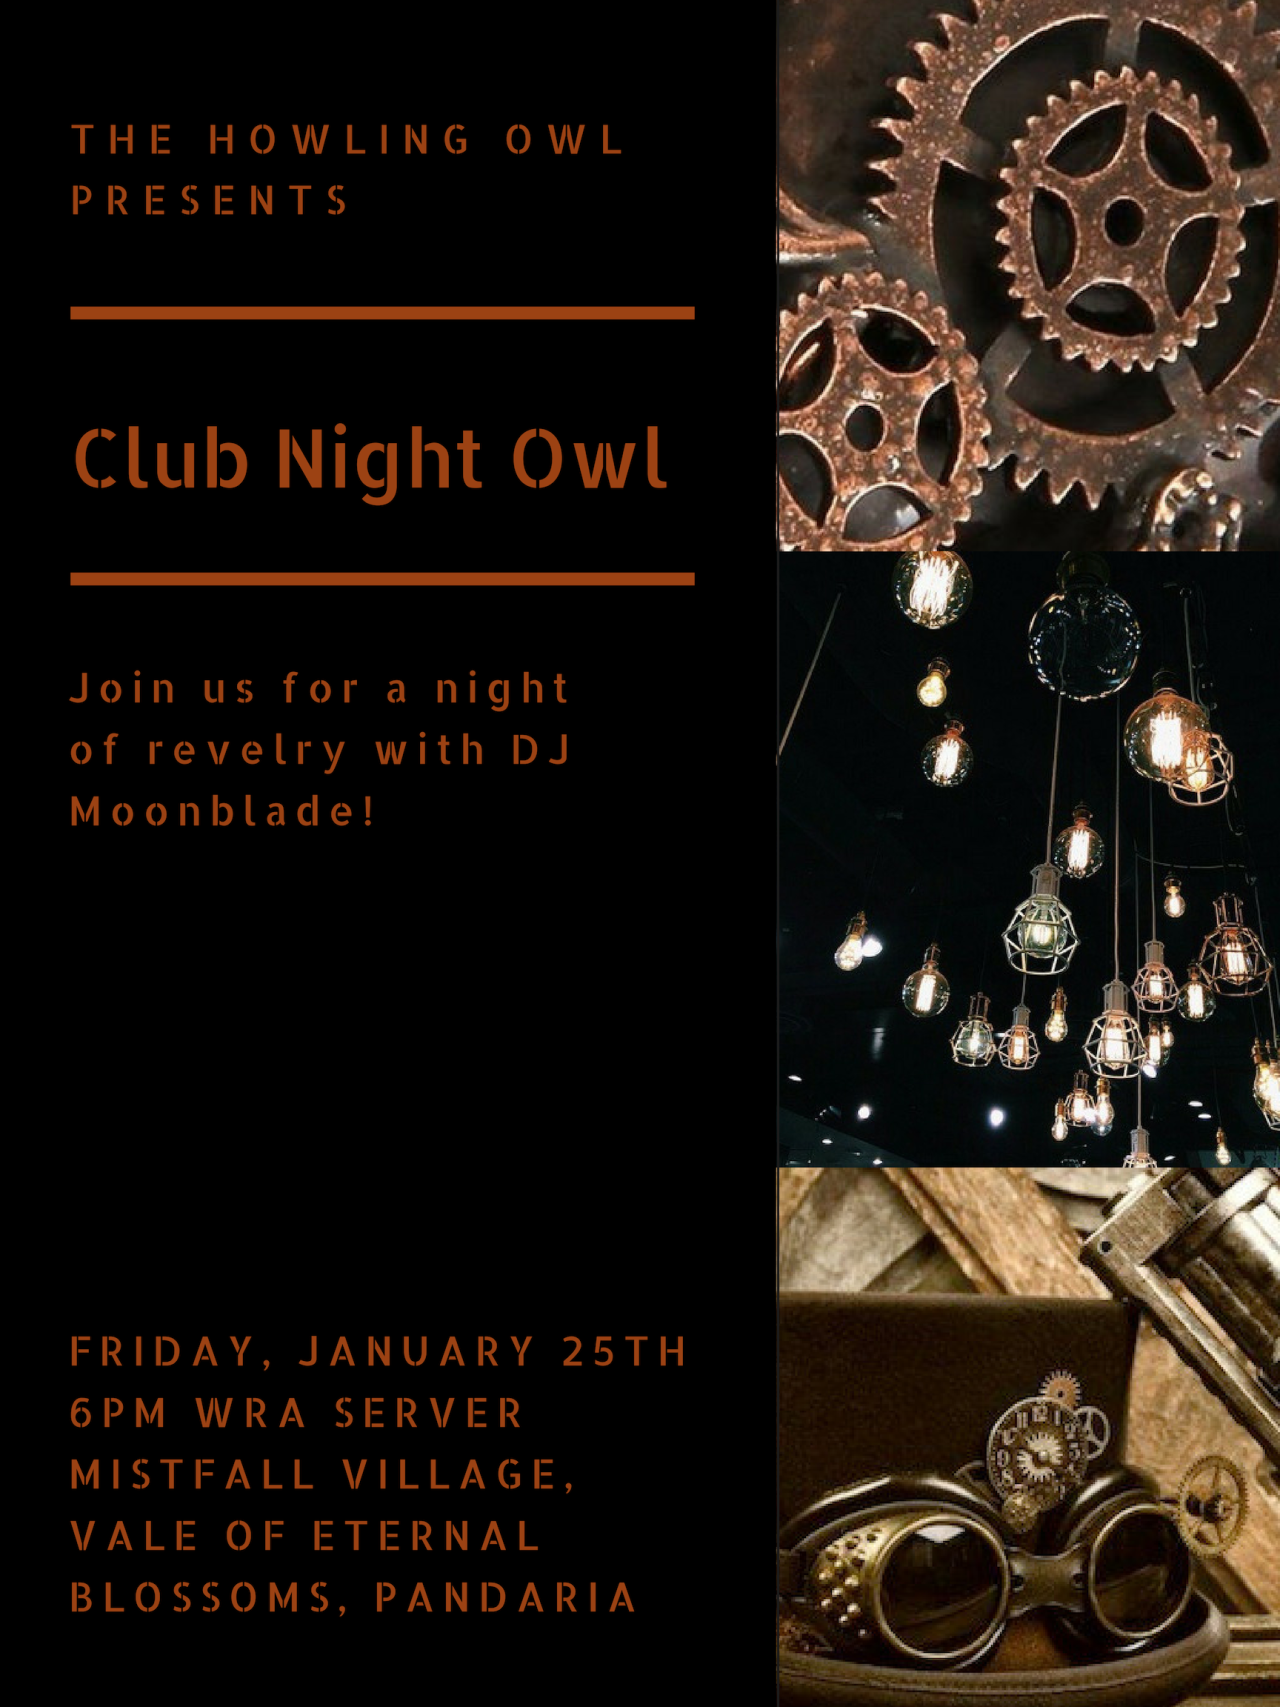 The Howling Owl Club Night Owl Steampunk Night